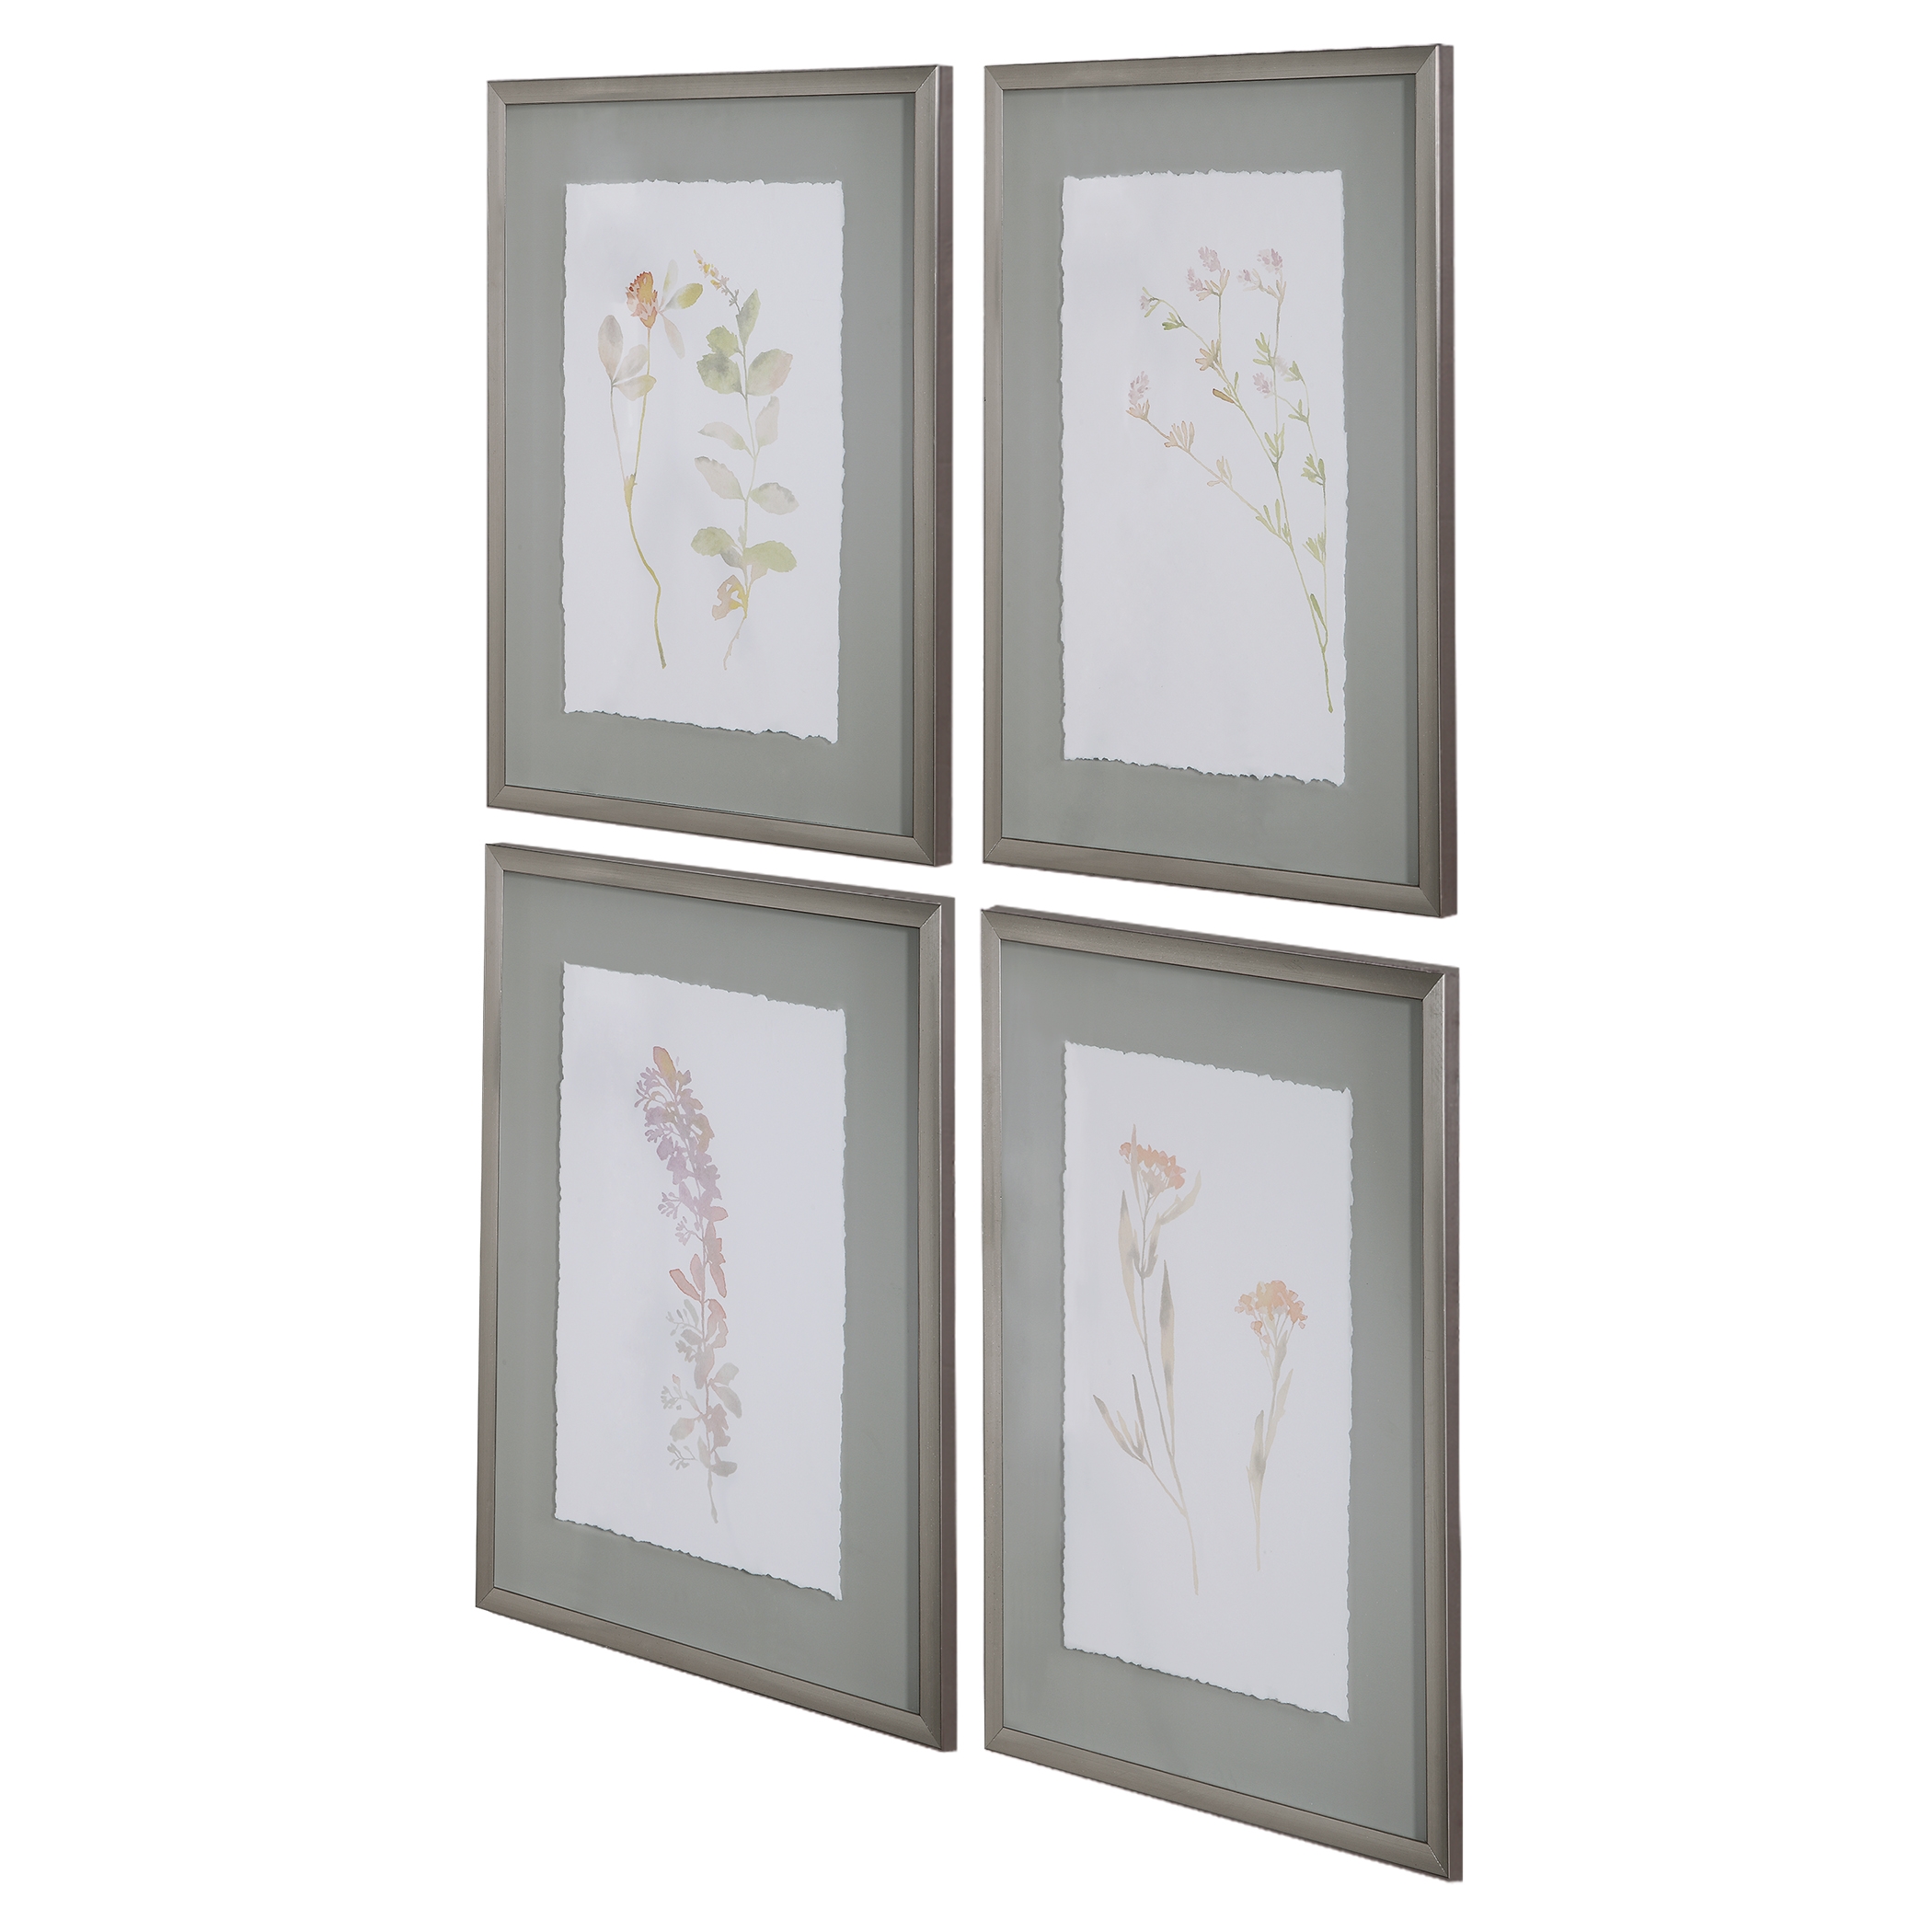 Flourish Framed Botanical Prints S/4 - Image 4